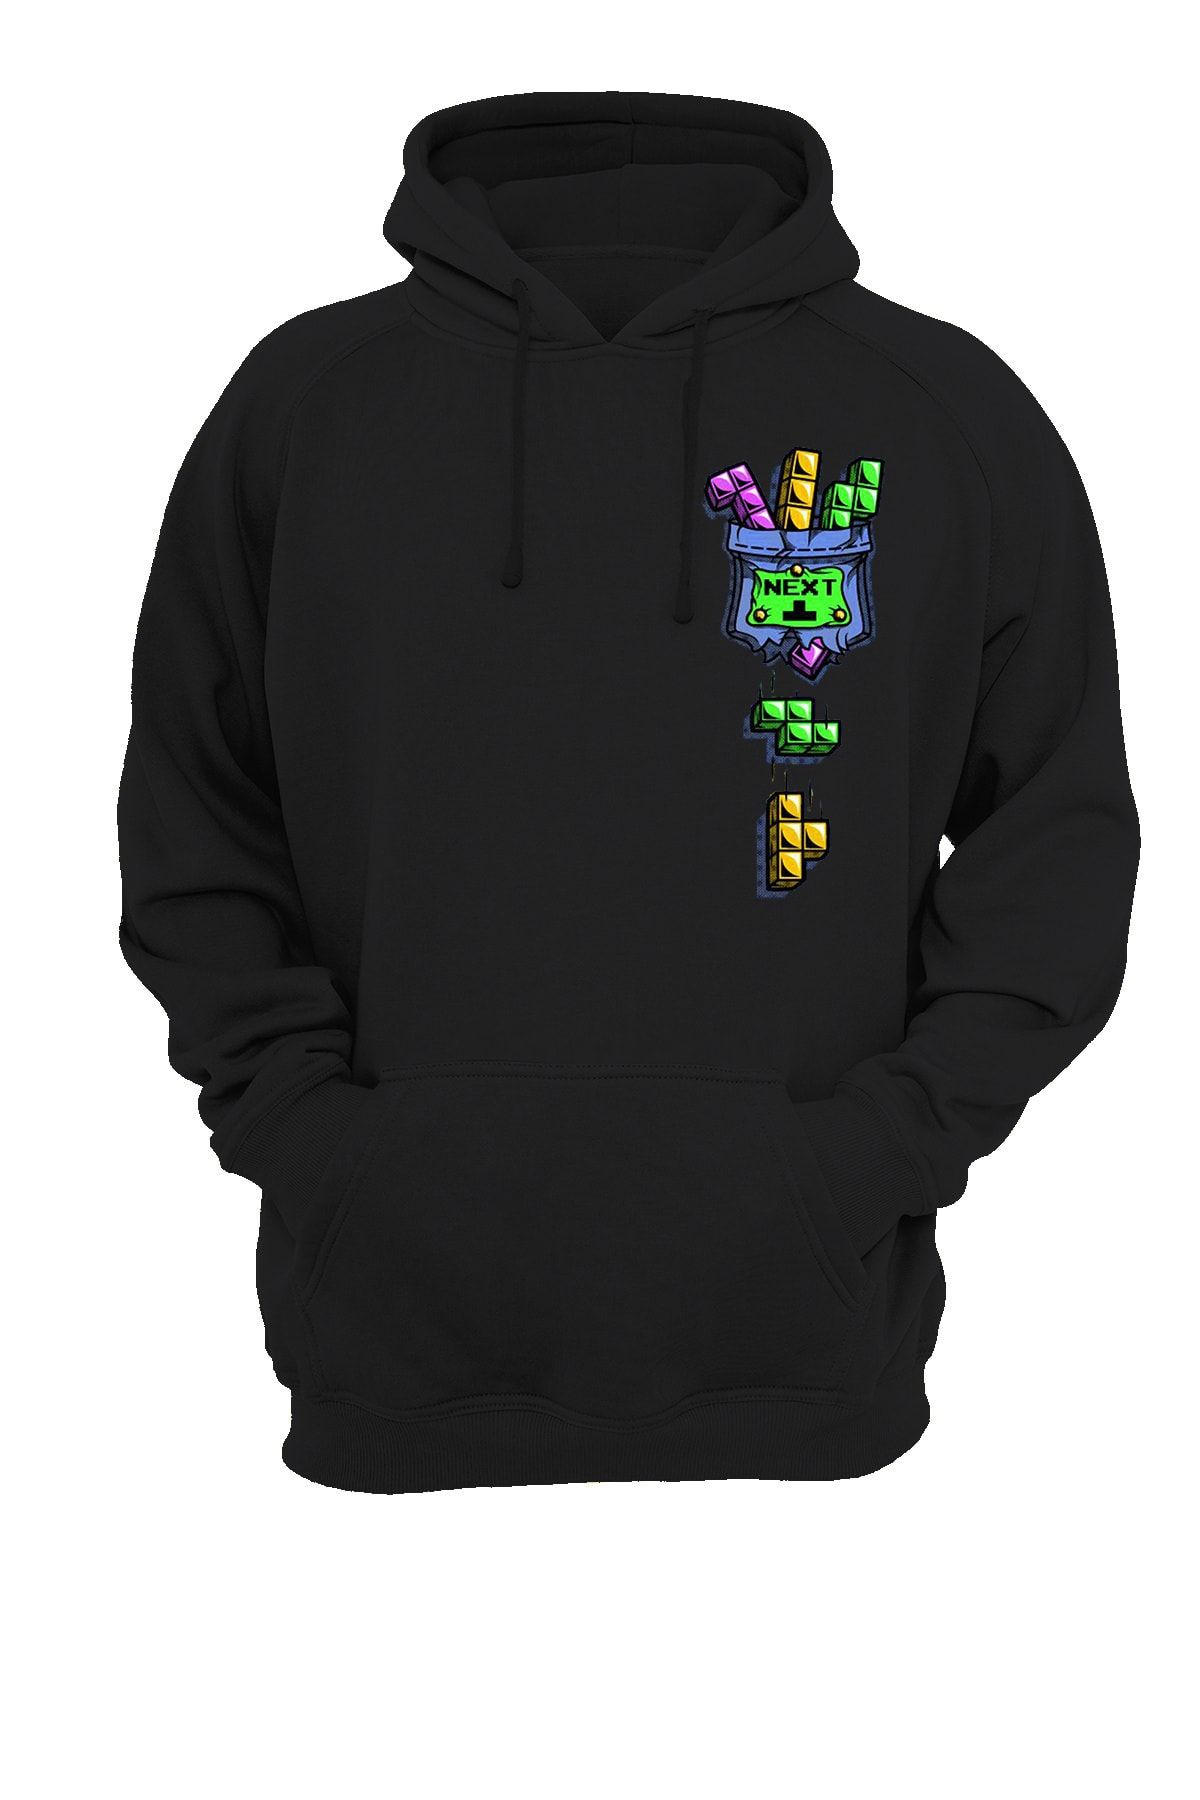 remonz Cep Tetris Baskılı Fermuarsız Kapüşonlu Sweatshirt